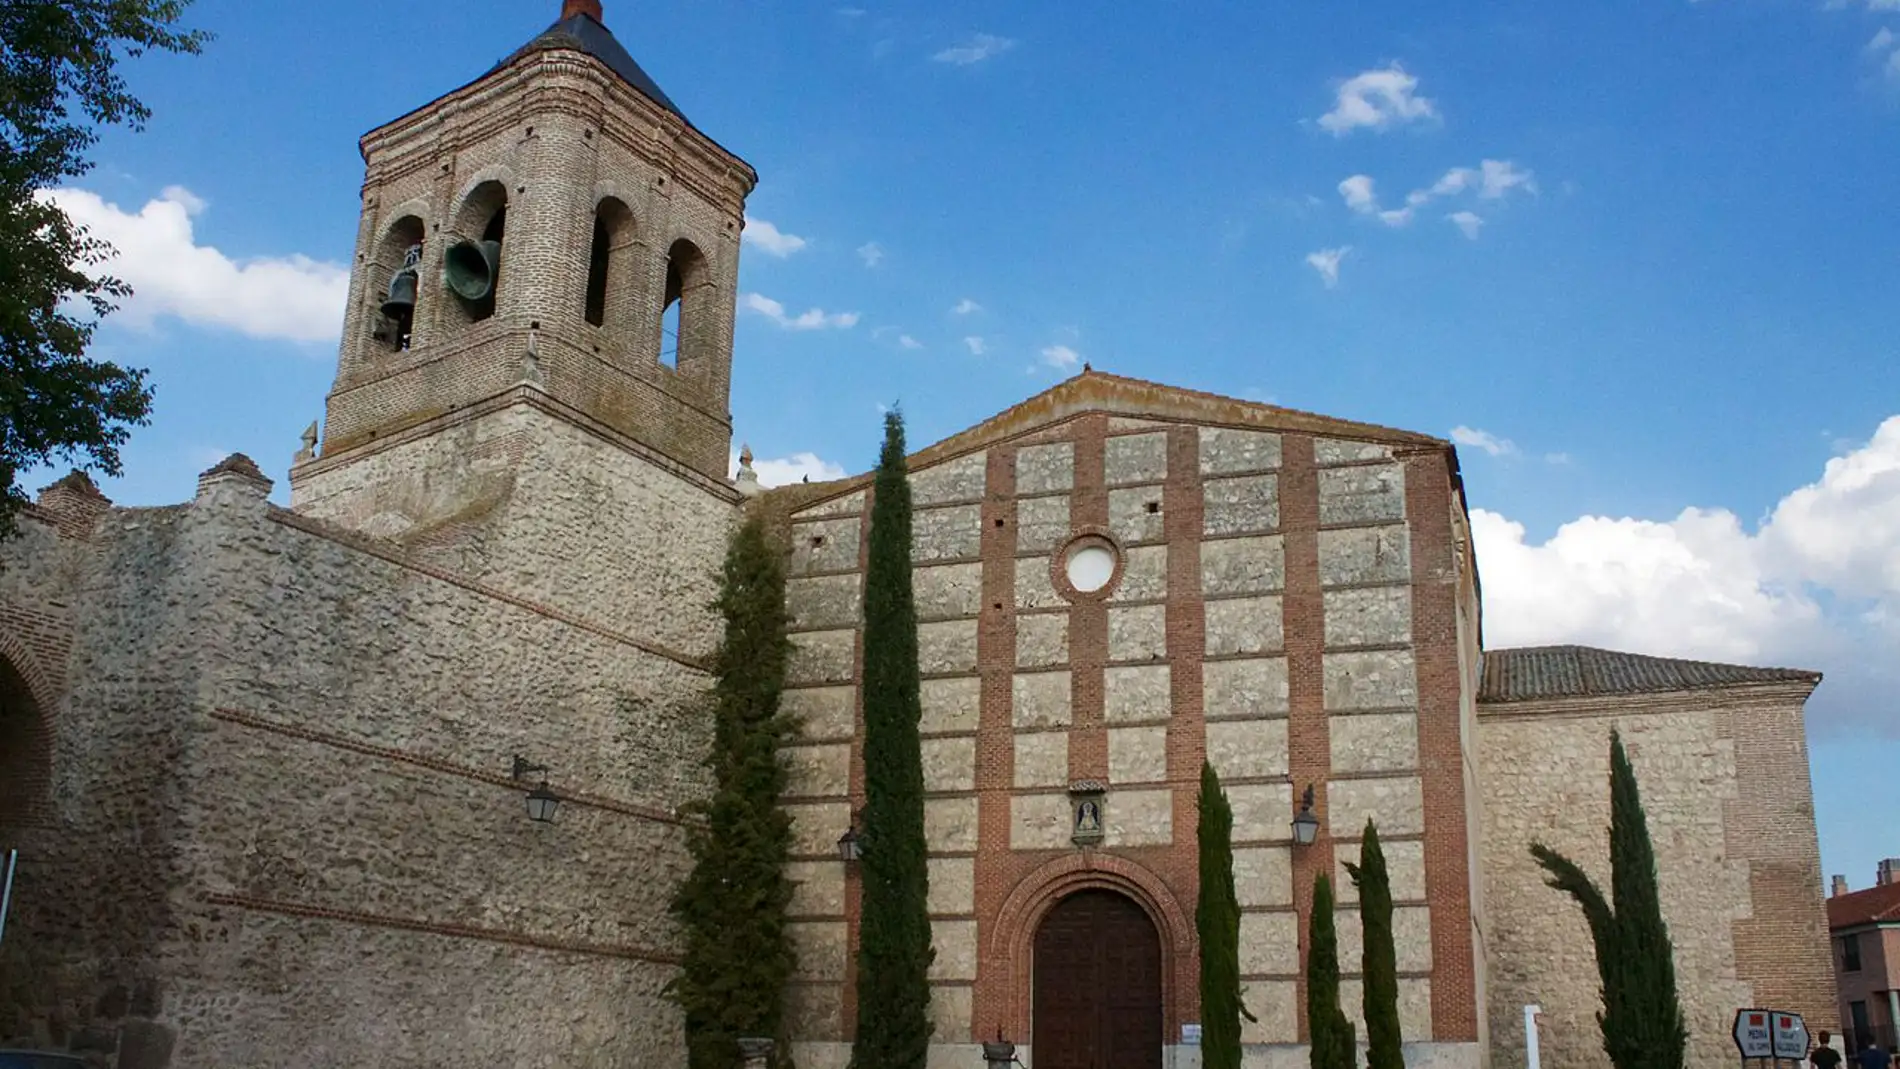 Iglesia San Miguel: historia del templo situado en Olmedo